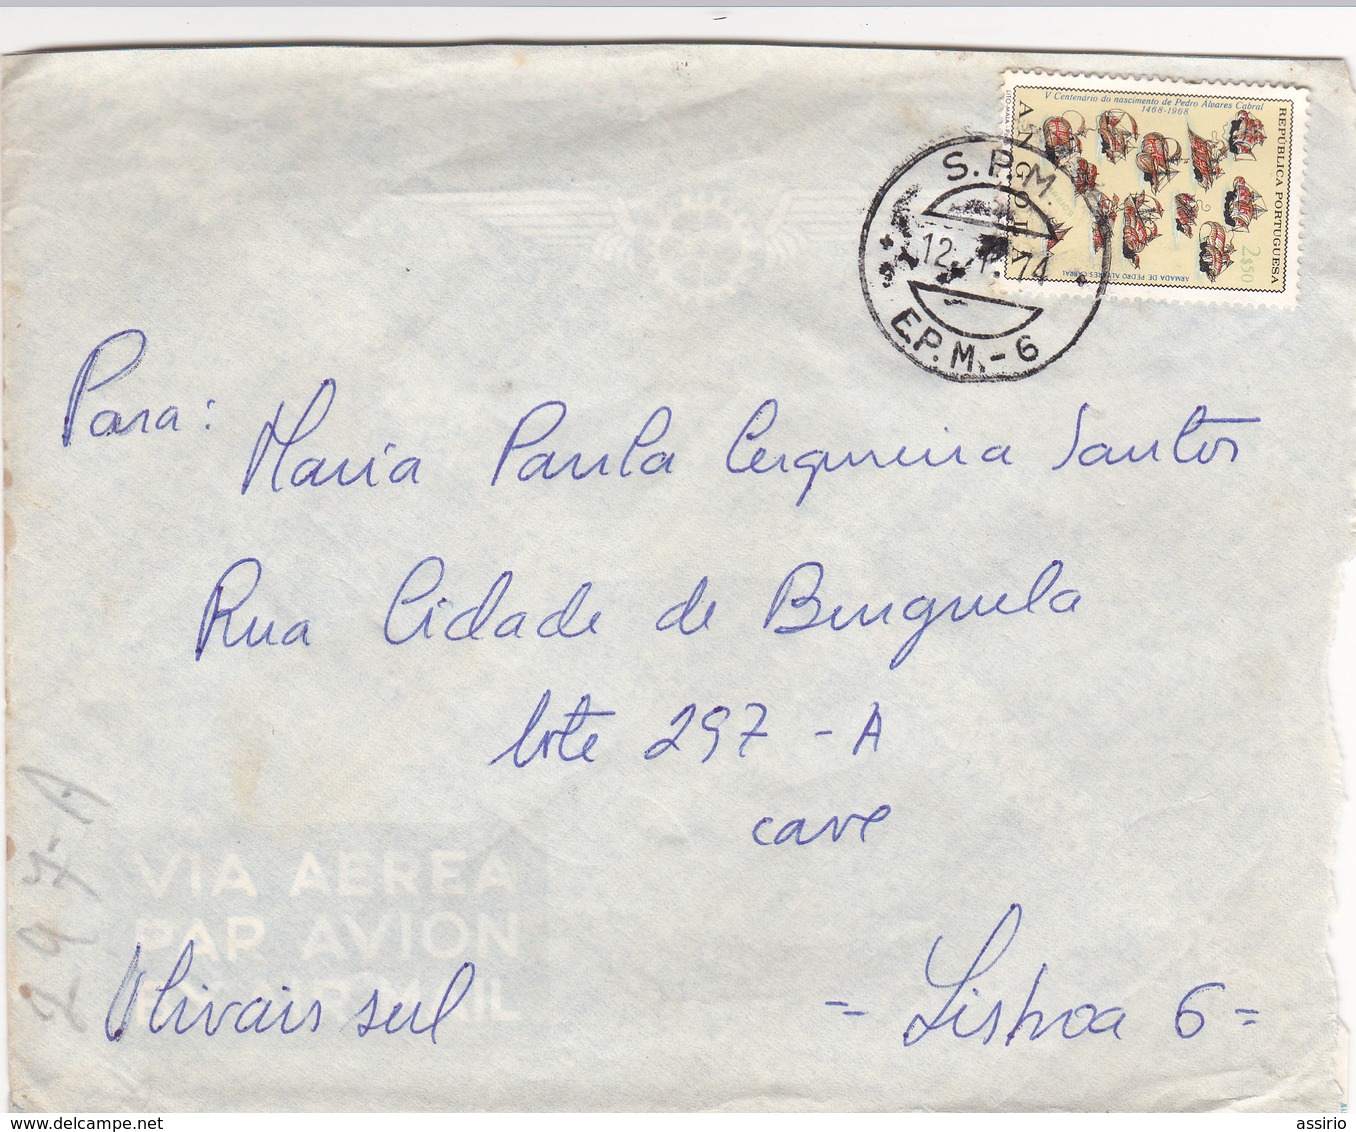 Portugal -Colonias - envelopes  e aerogramas com selos e carimbos diferentes